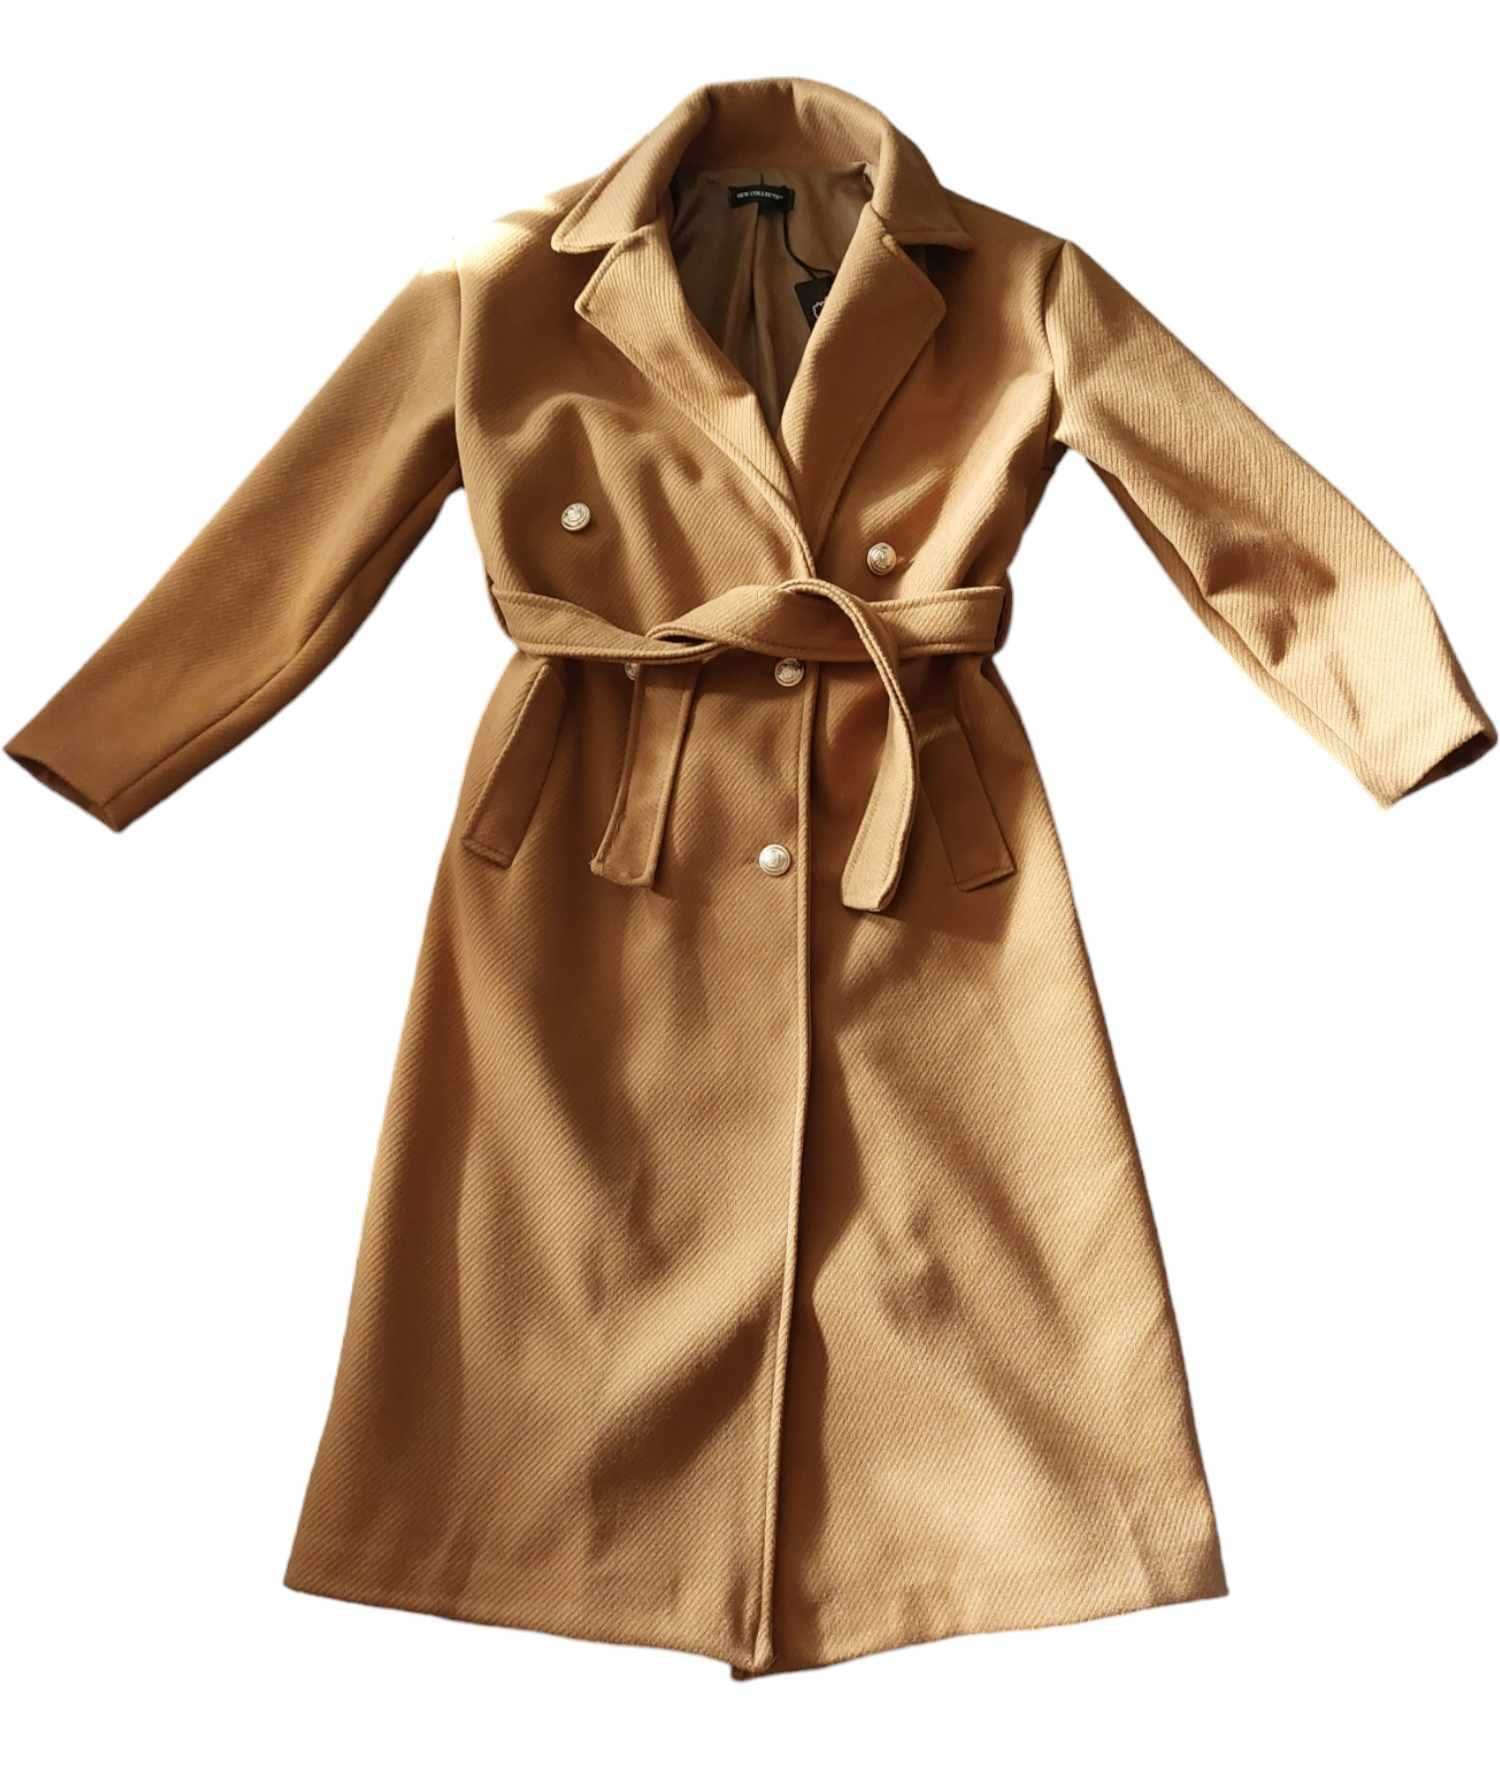 nowy klasyczny brązowy płaszcz damski przejściowy wiosenny L 40+KOMIN